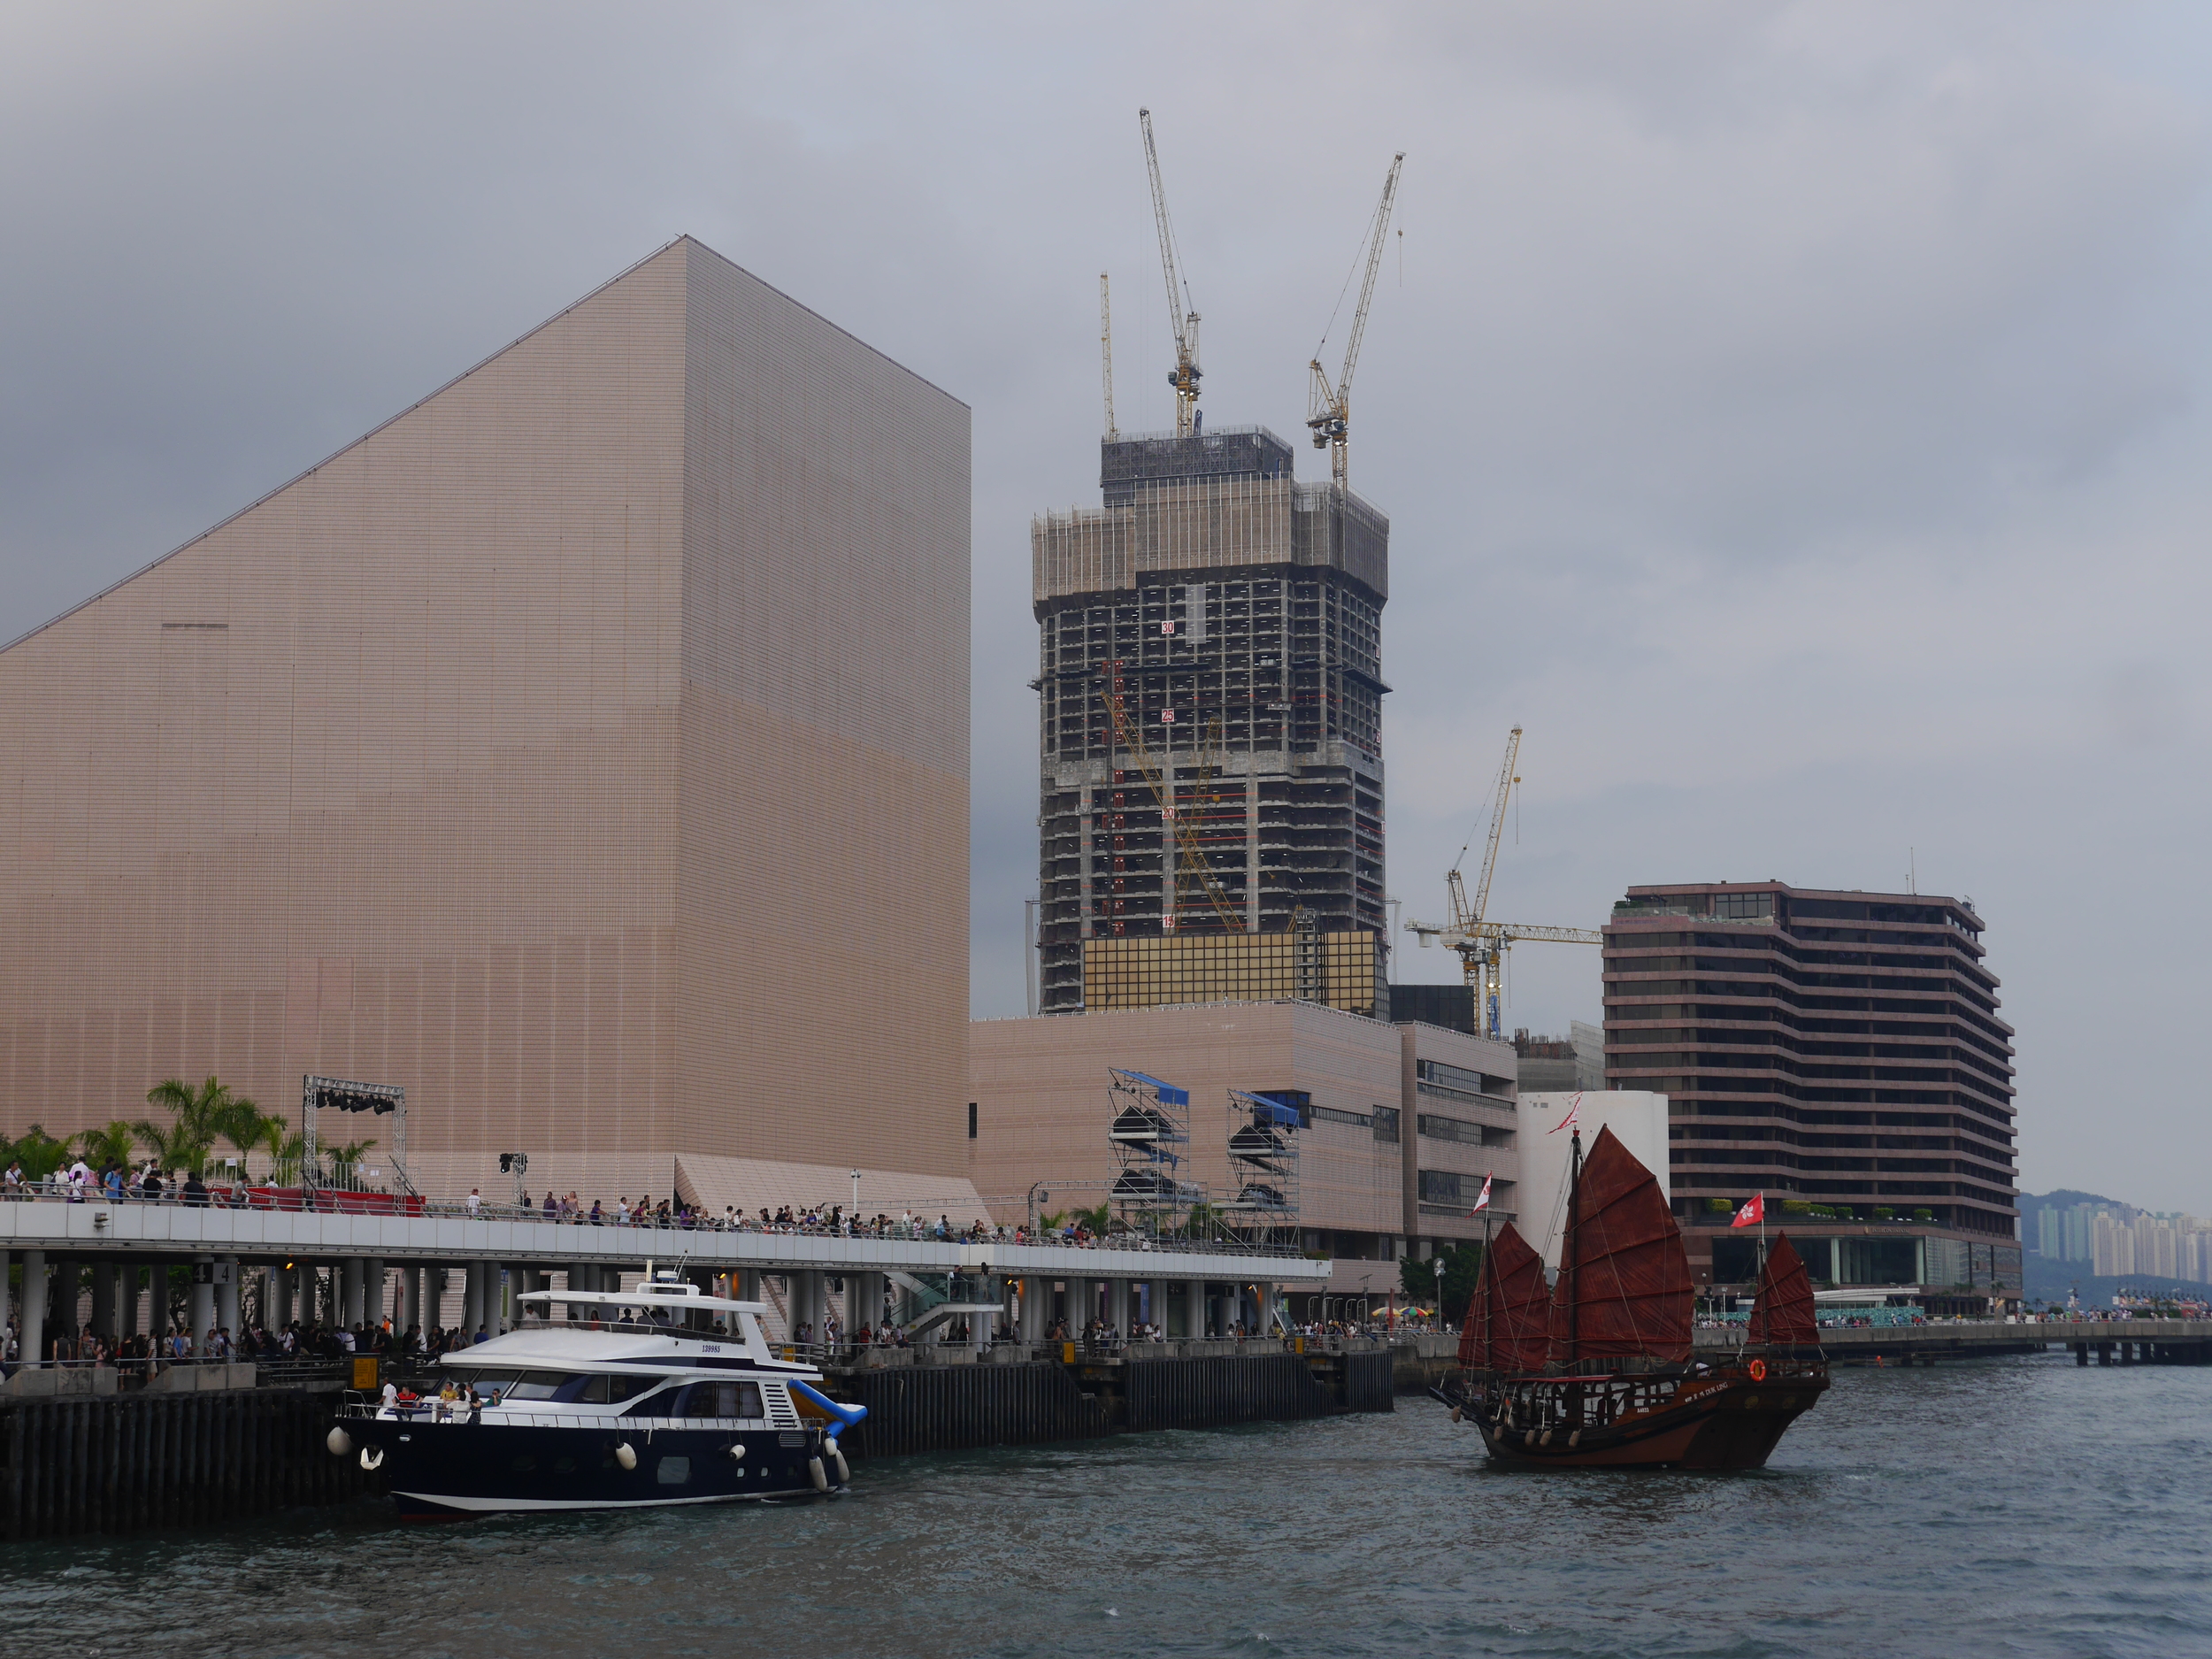   Hong Kong Cultural Centre  and junk. 